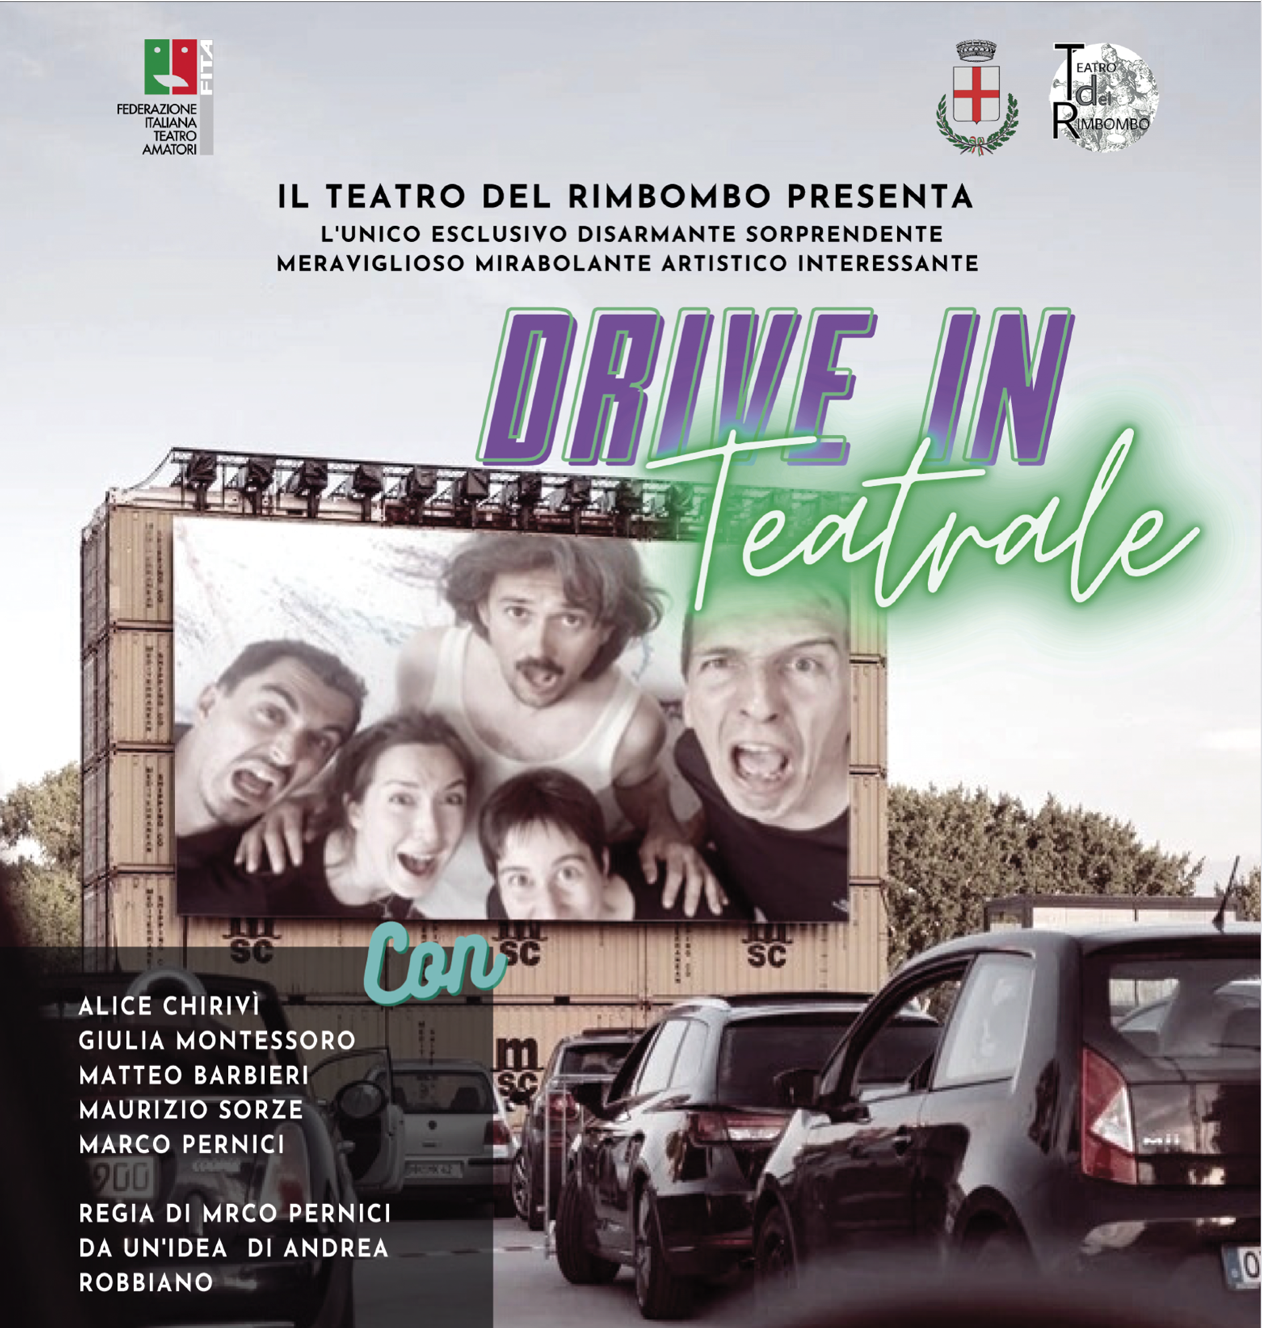 Il teatro dà spettacolo anche davanti alle auto: a Serravalle arriva il drive-in